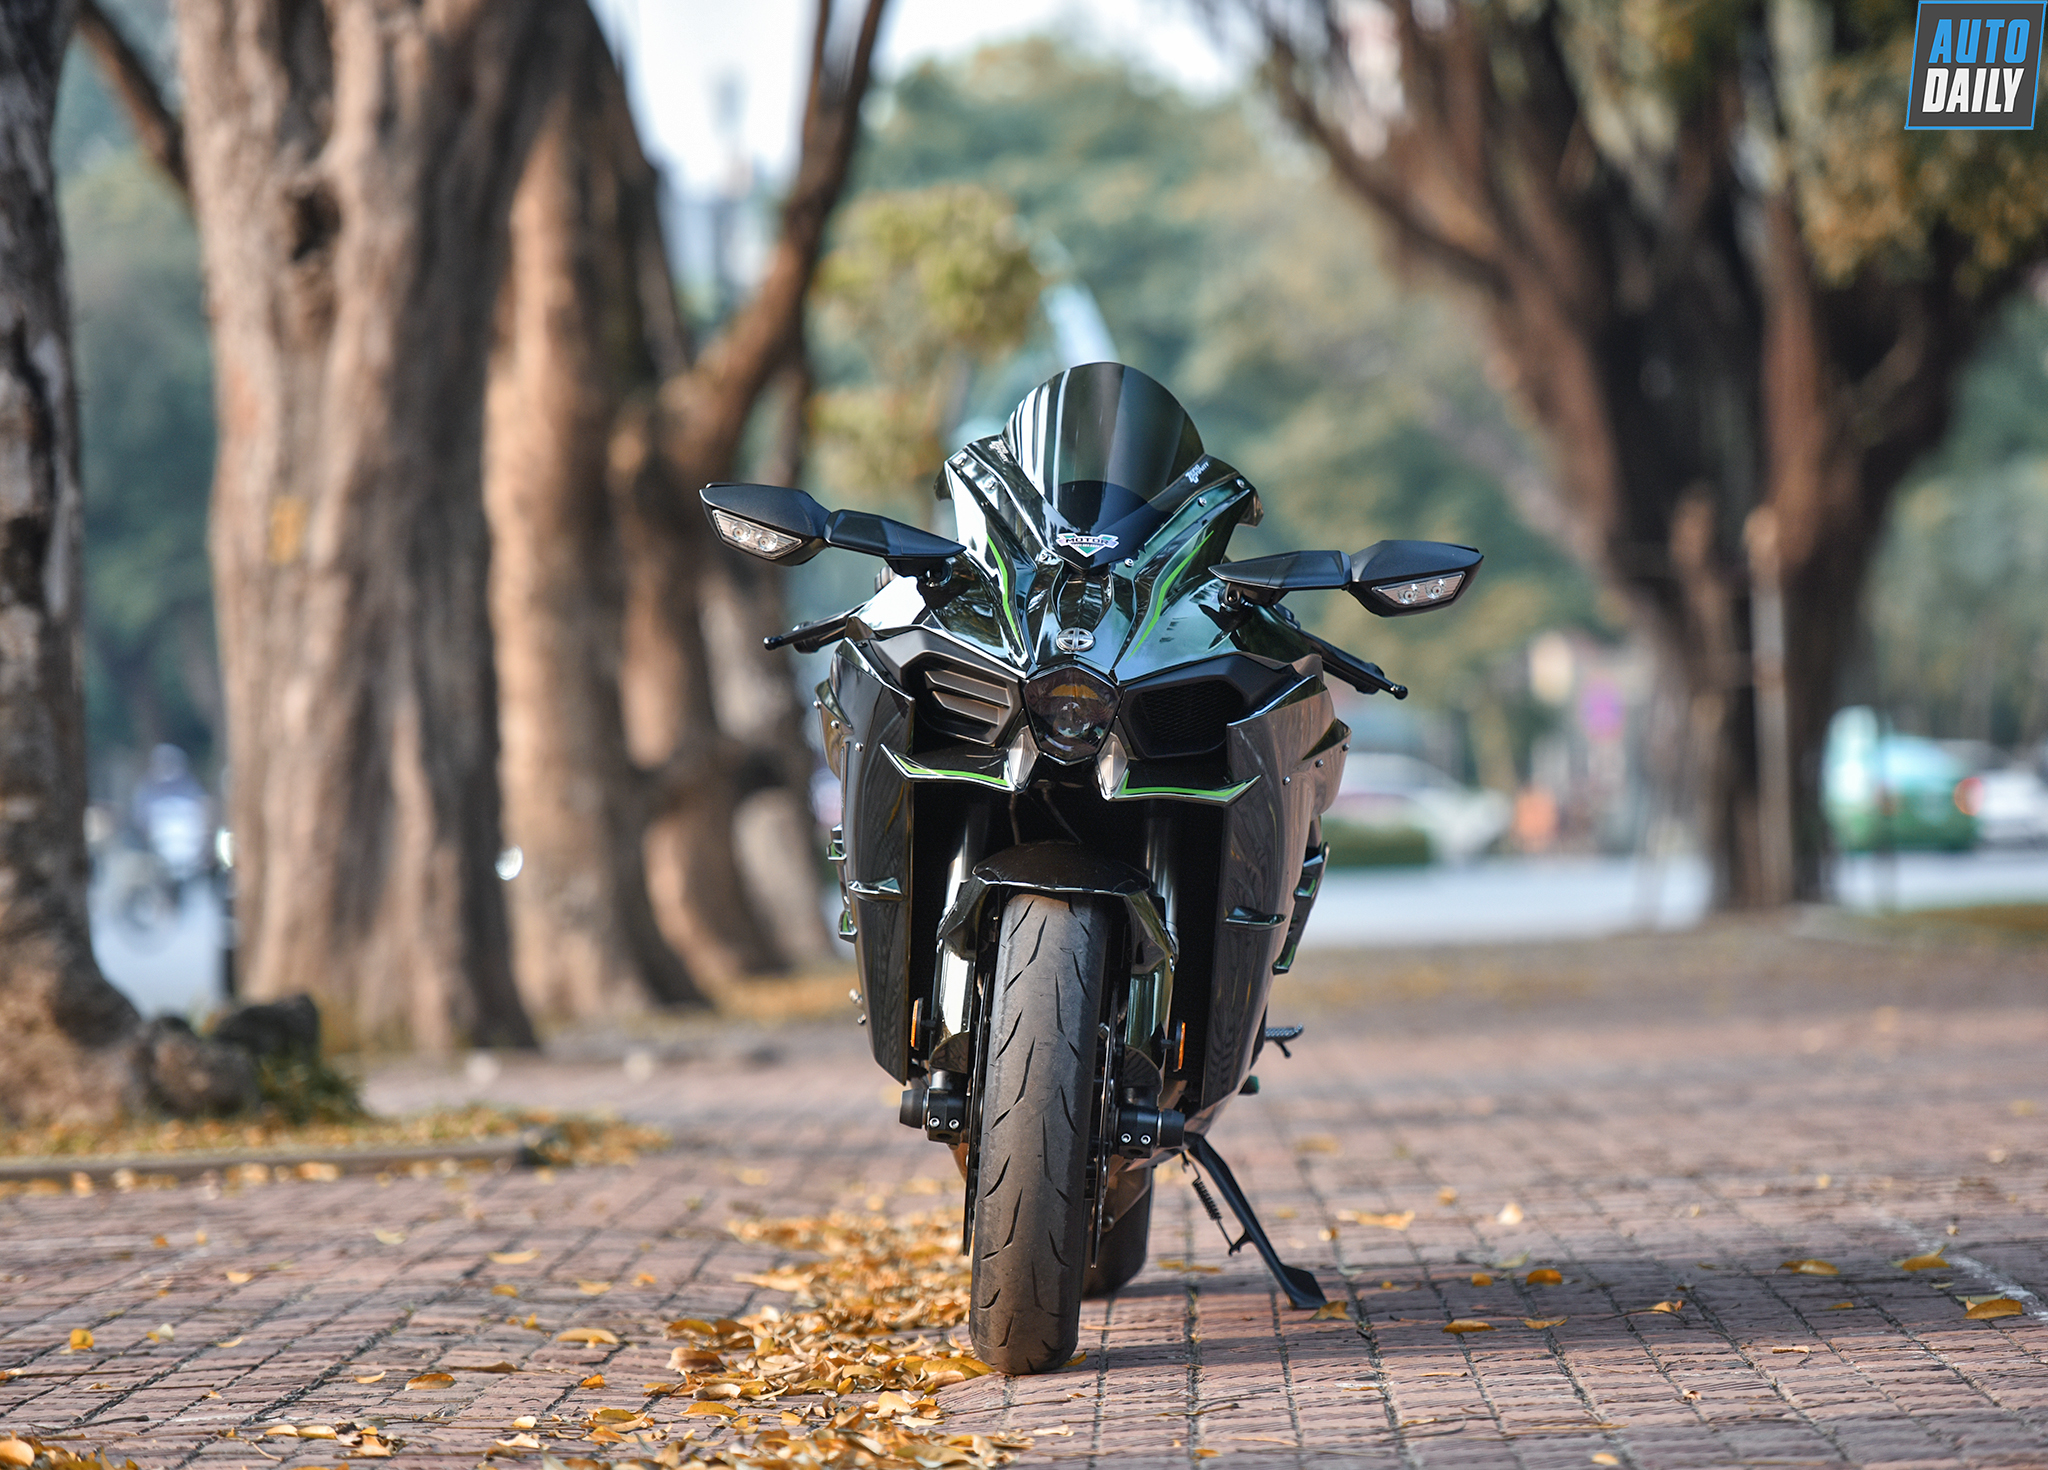 Siêu môtô Kawasaki Ninja H2 siêu lướt giá 850 triệu tại Hà Nội h17.jpg